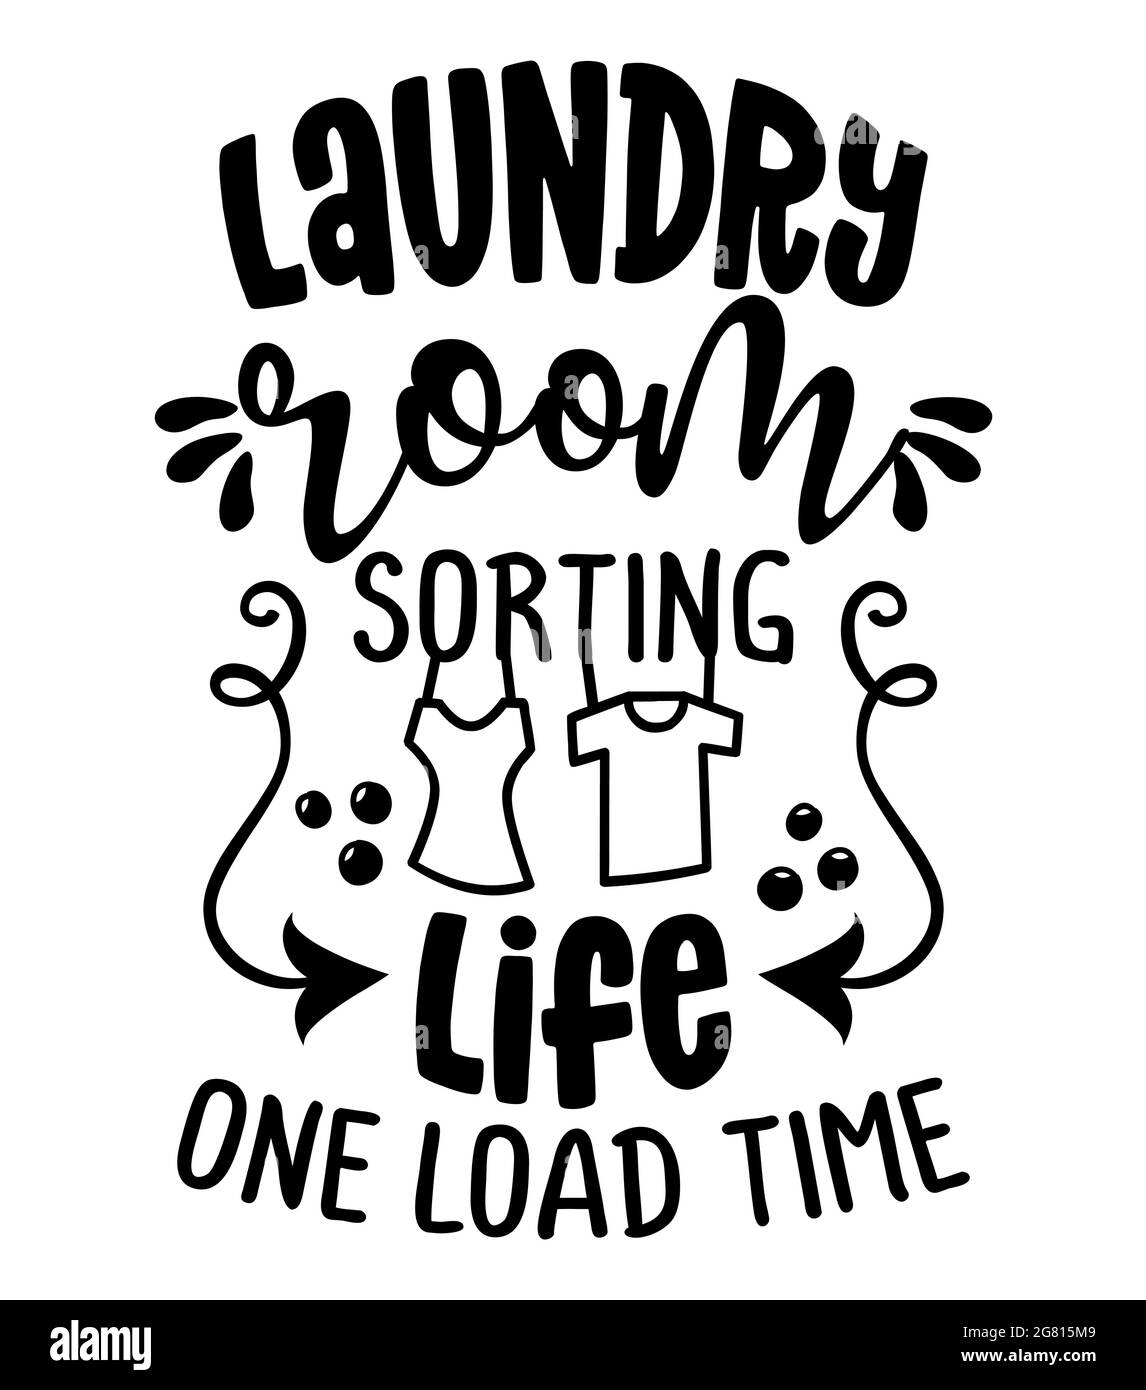 Waschküche, Sortierung Leben eine Ladung Zeit - Design für T-Shirts, Karten, Waschküche Wanddekoration. Handbemalter Pinselstift Moderne Kalligraphie isolieren Stock Vektor